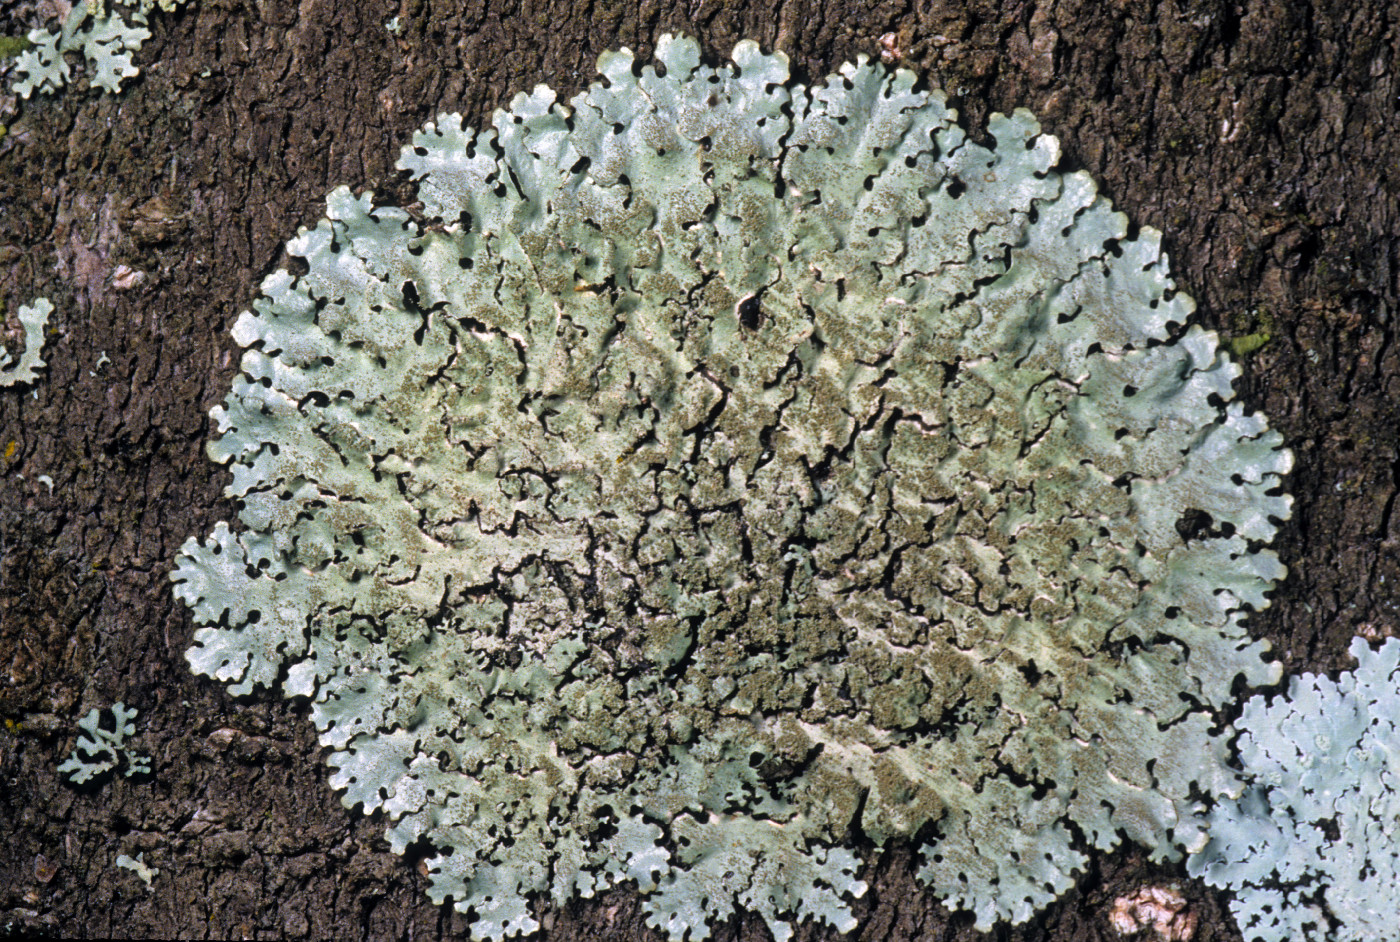 Hypotrachyna minarum image